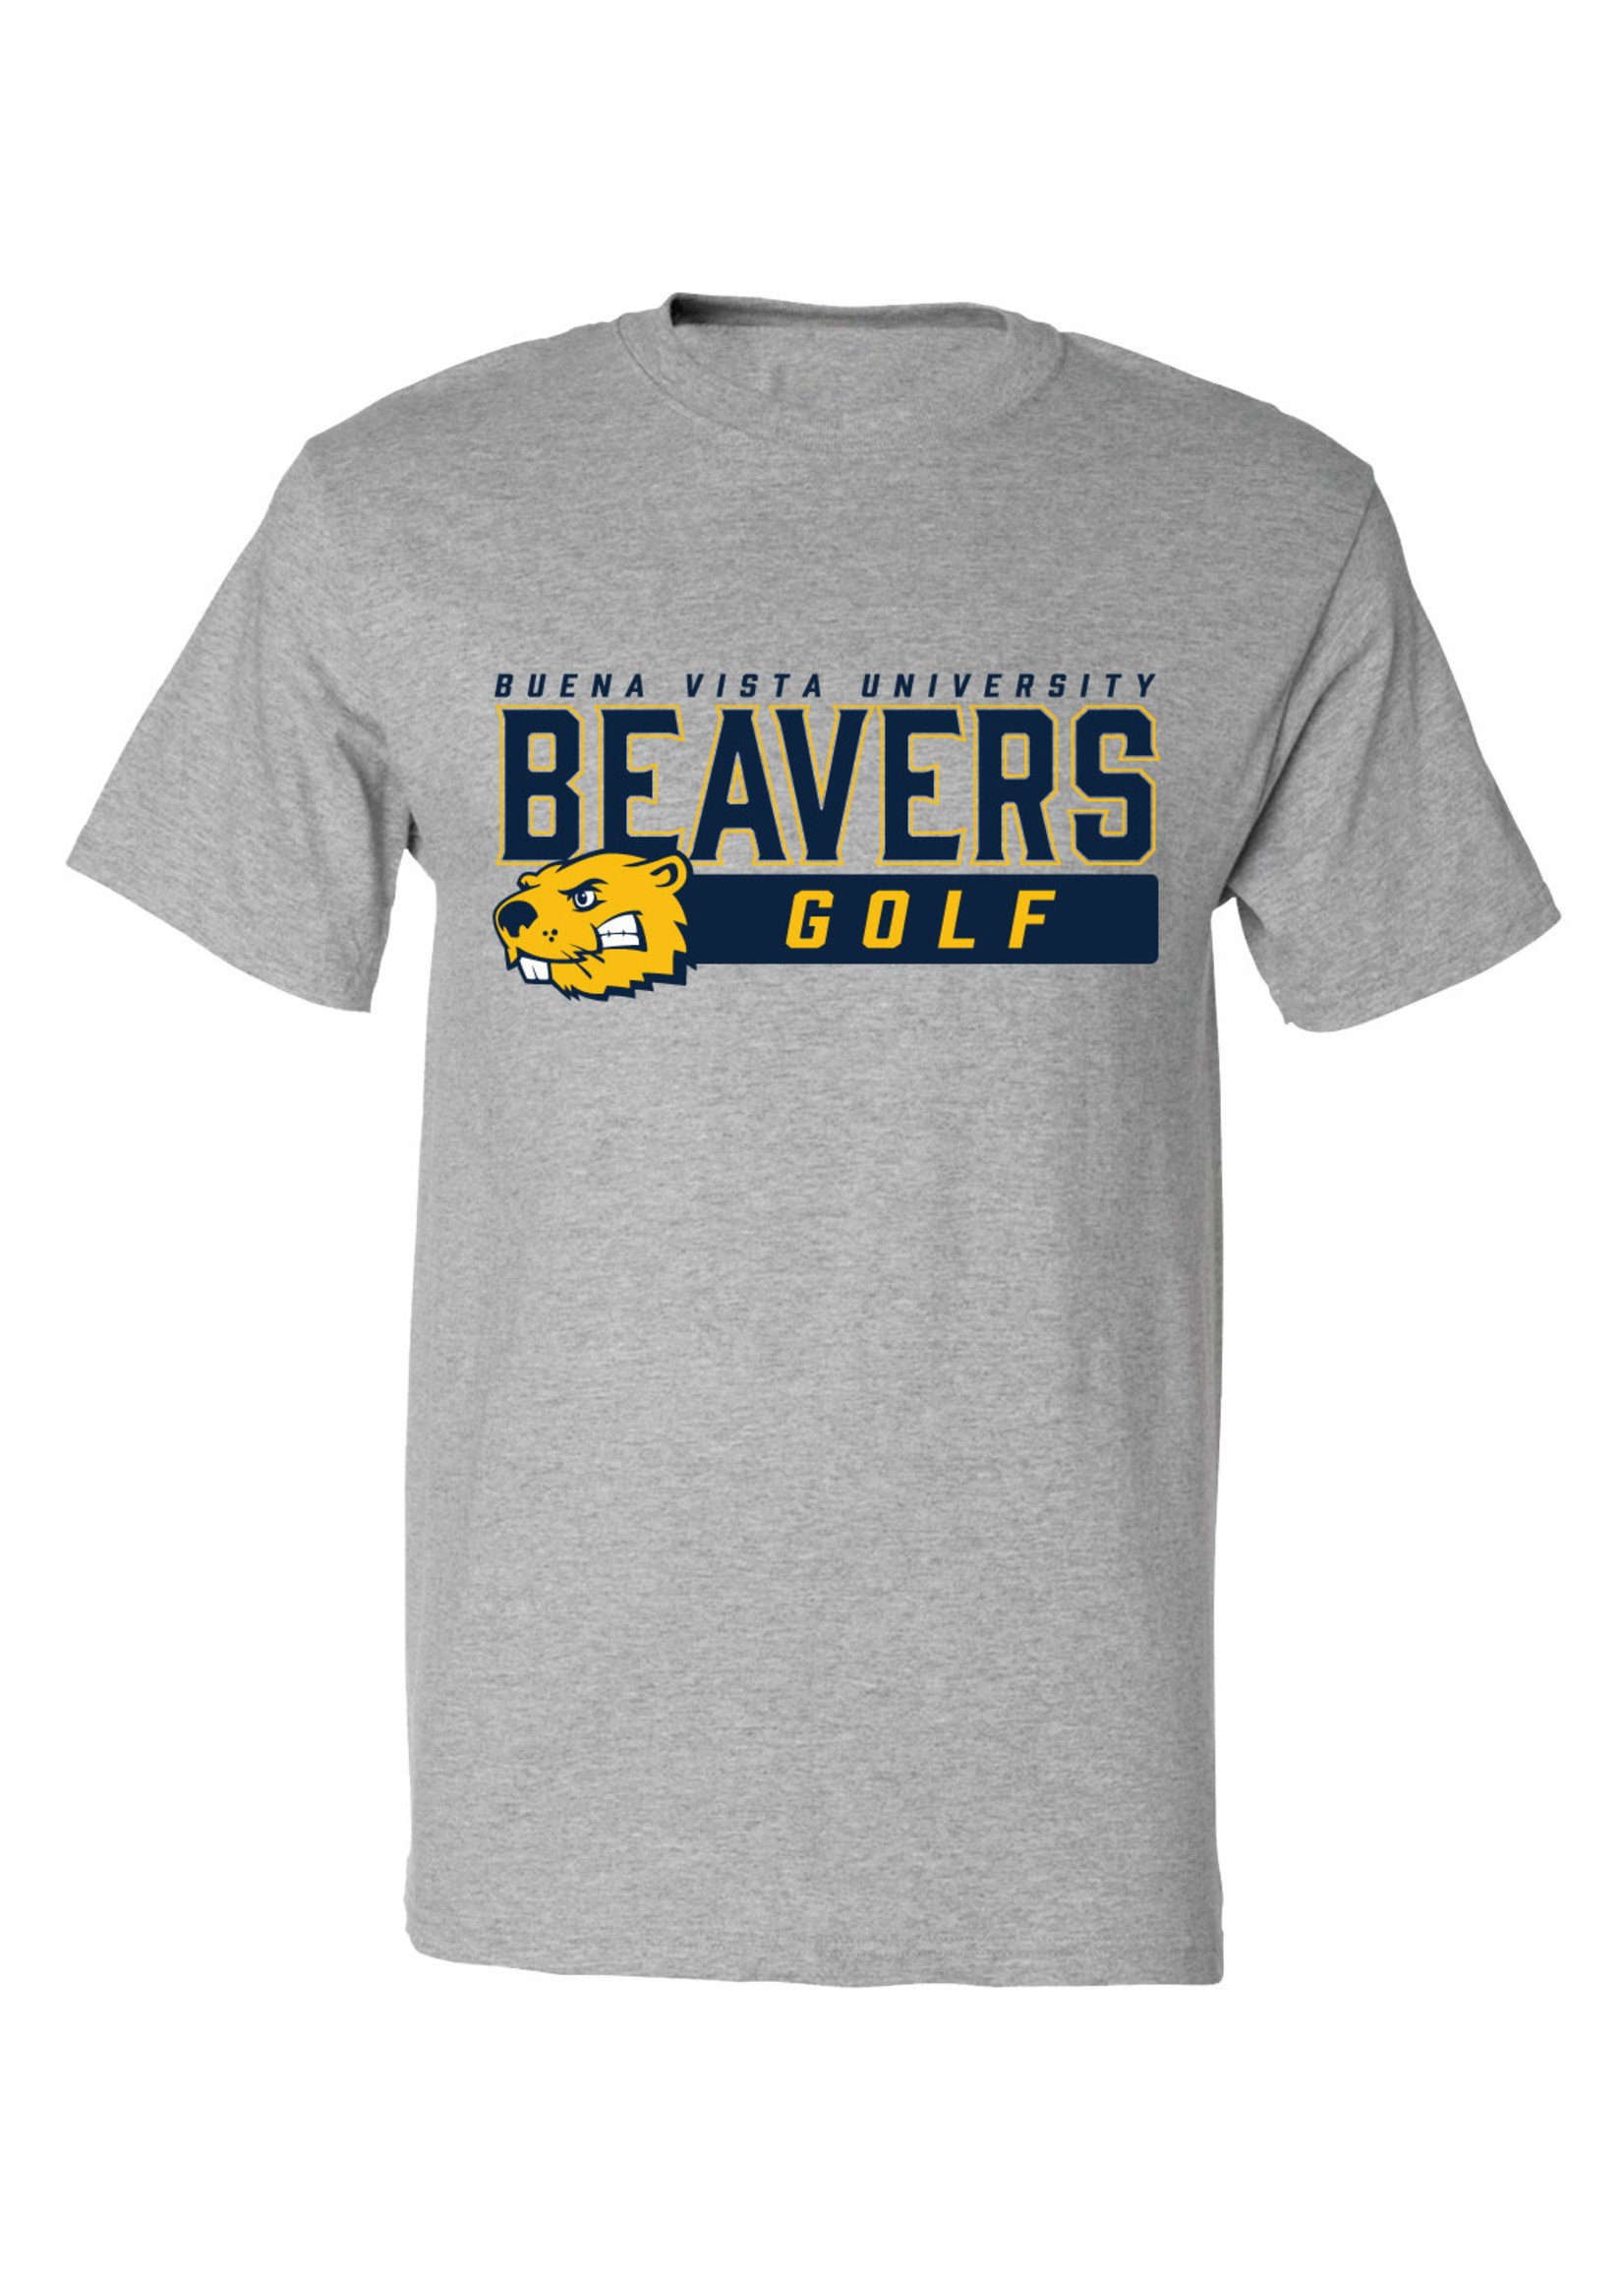 Freedom Wear Co. Golf T-Shirt